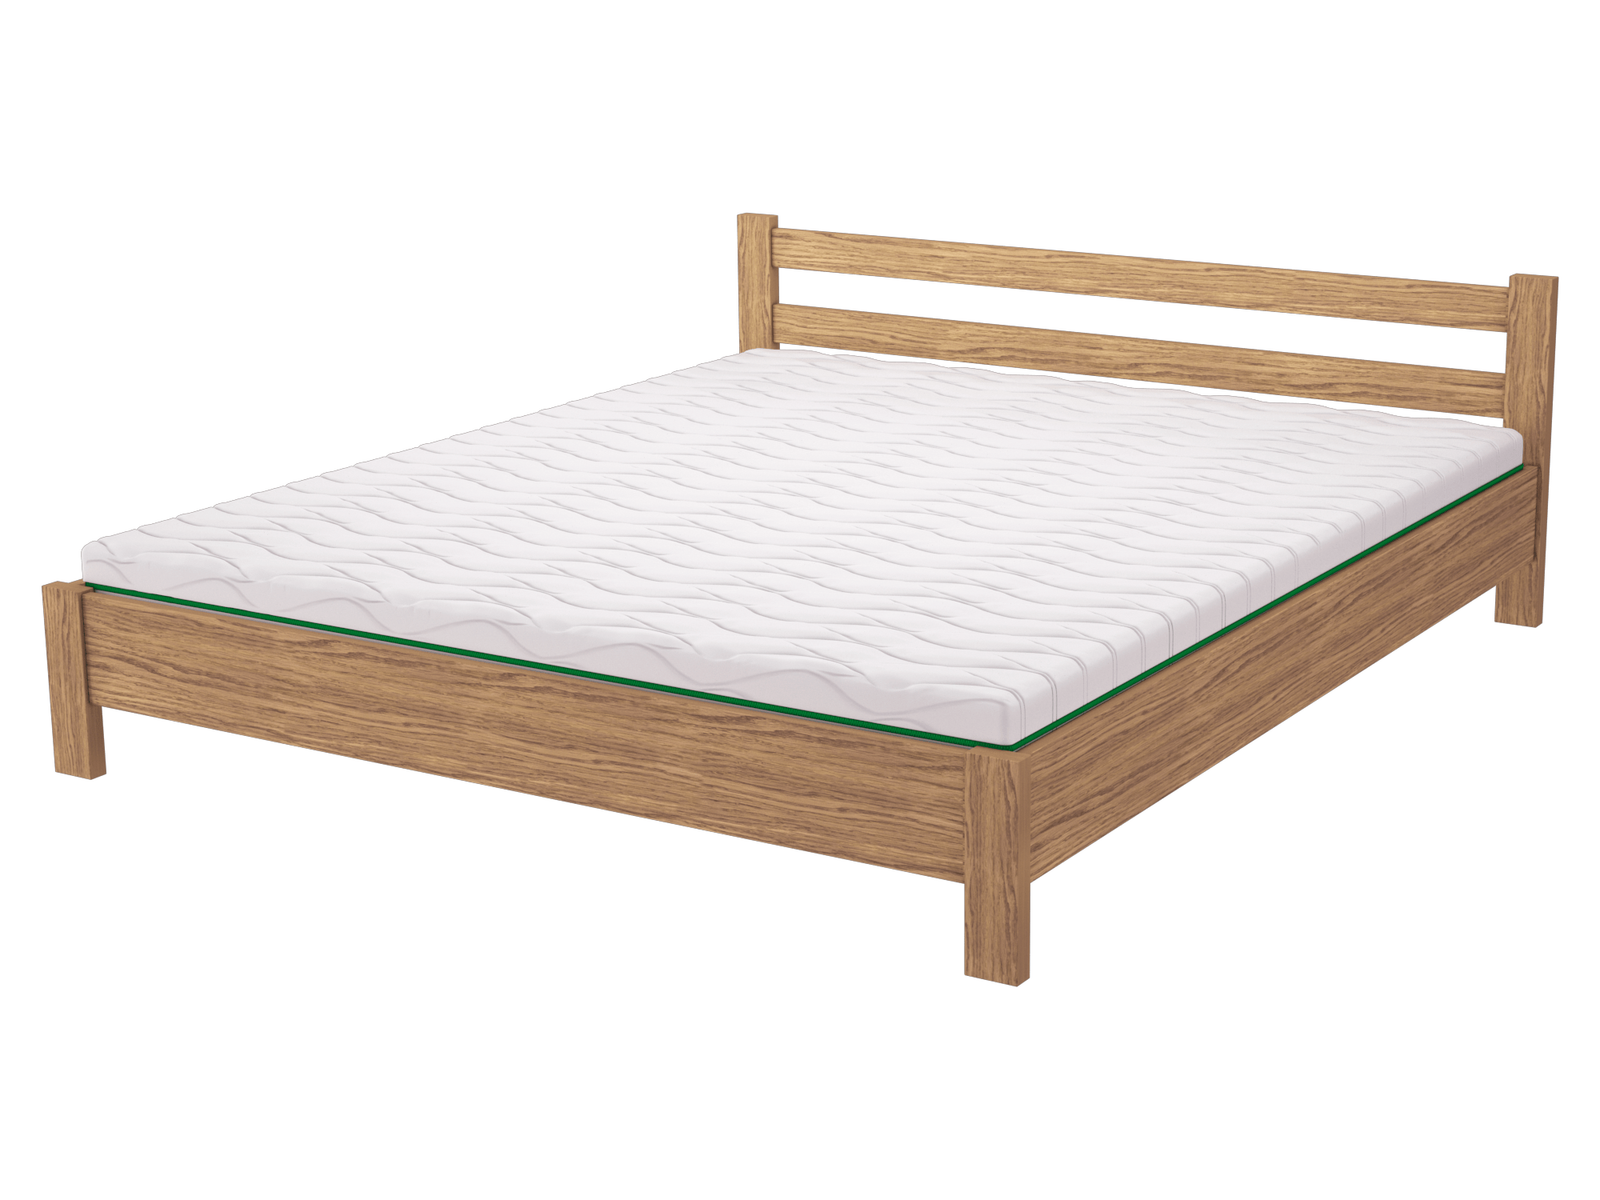 Комплект кровать деревянная FWOOD Майя + матрас Air Dream Millenium